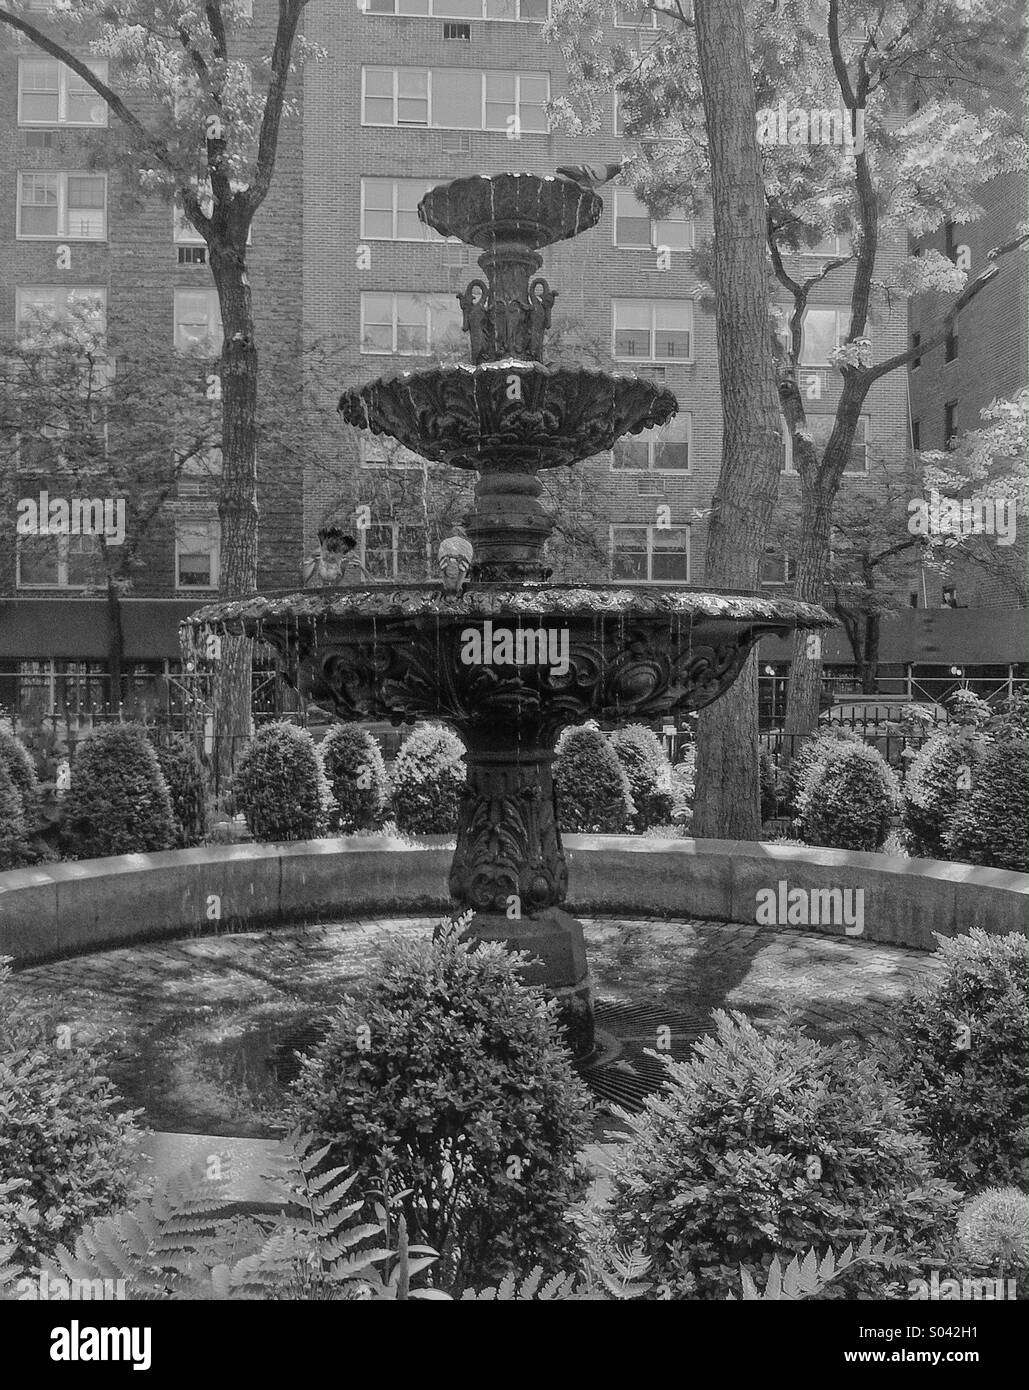 NYC fountain Stock Photo